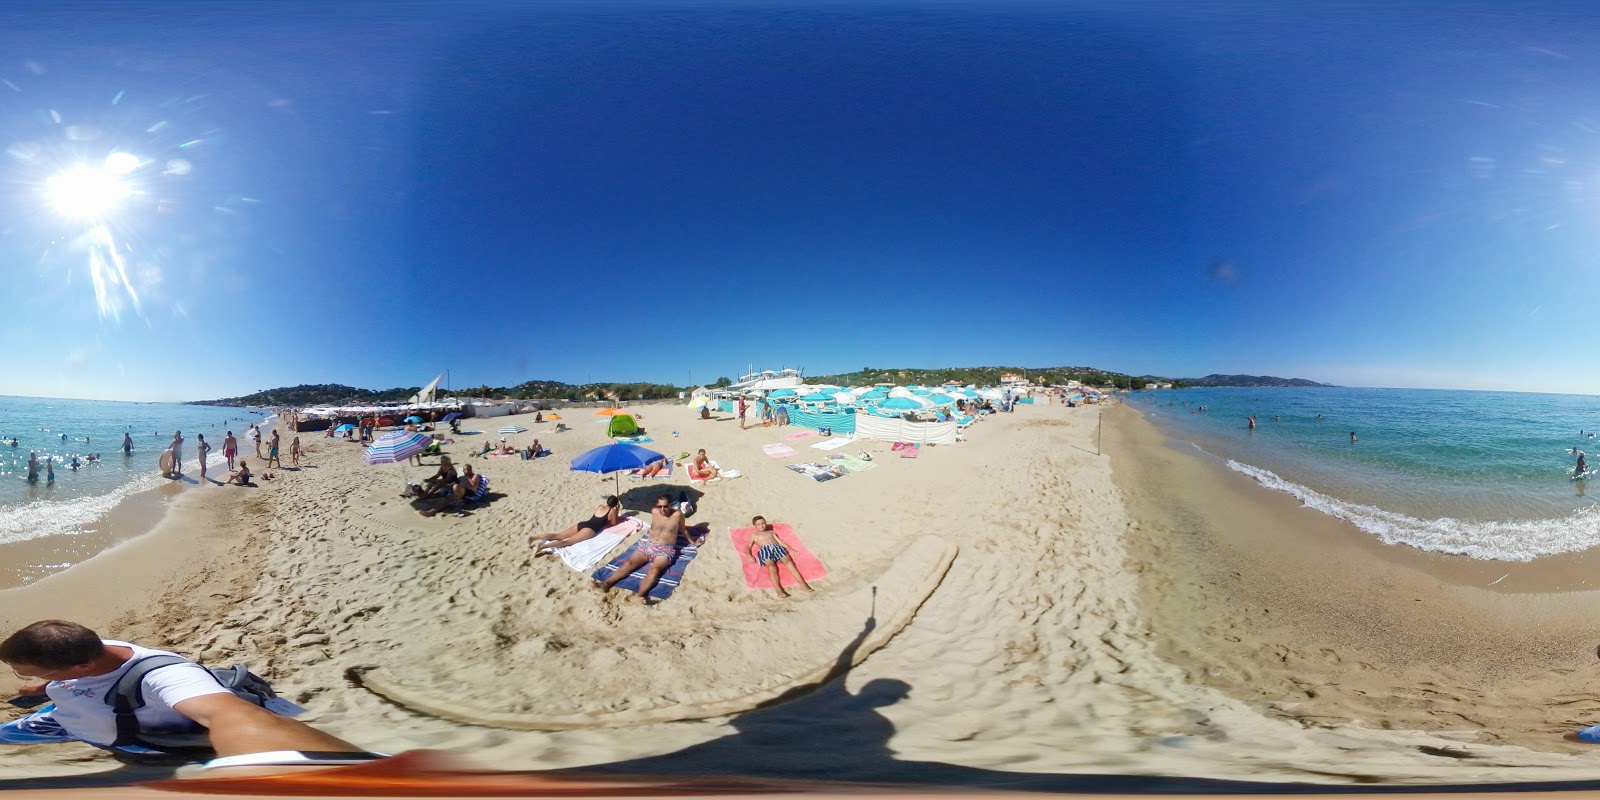 Nartelle Plajı'in fotoğrafı parlak kum yüzey ile